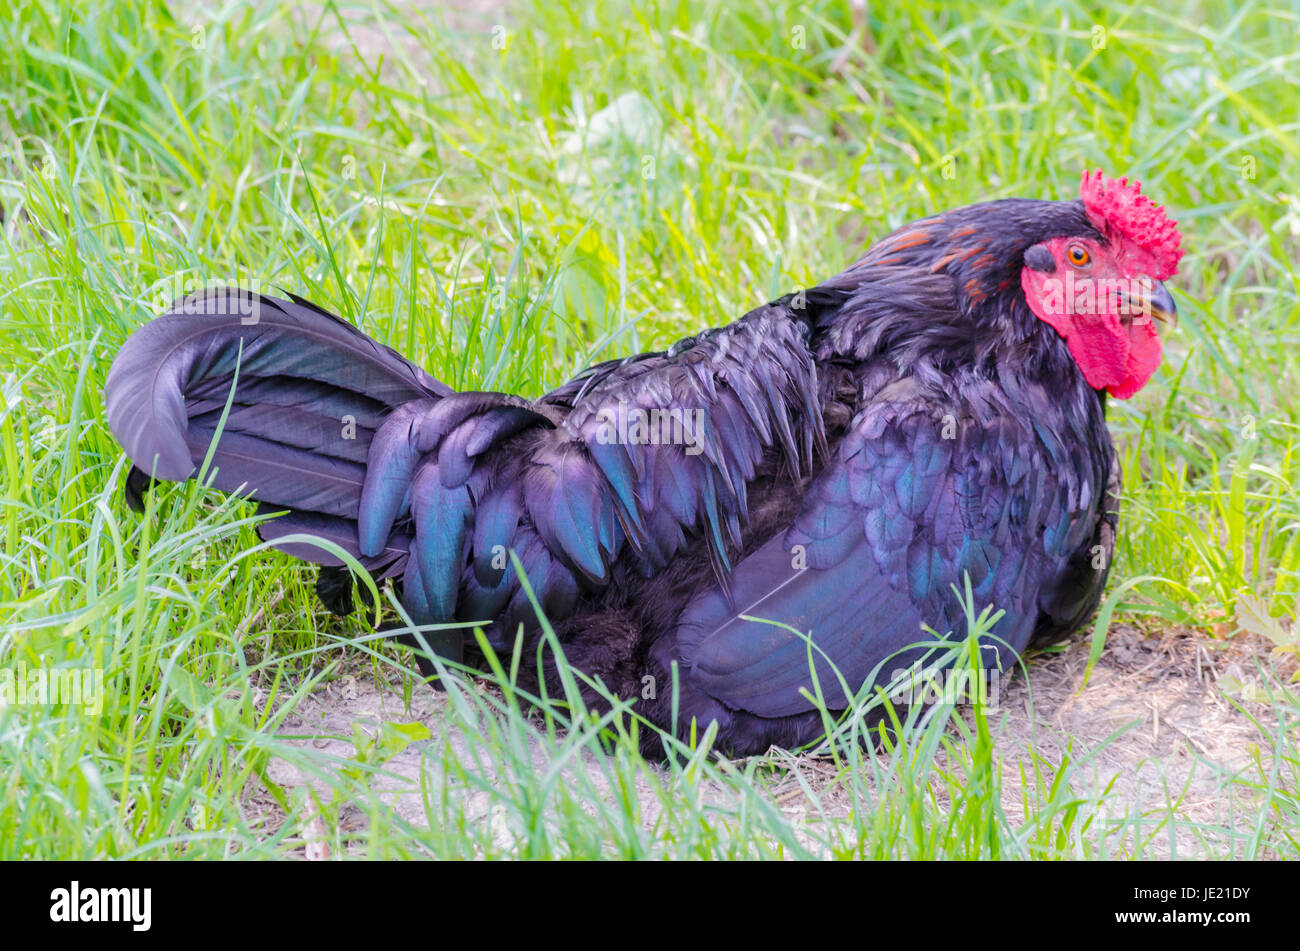 Huhn mit schwarzen Gefieder beim brüten. Stock Photo